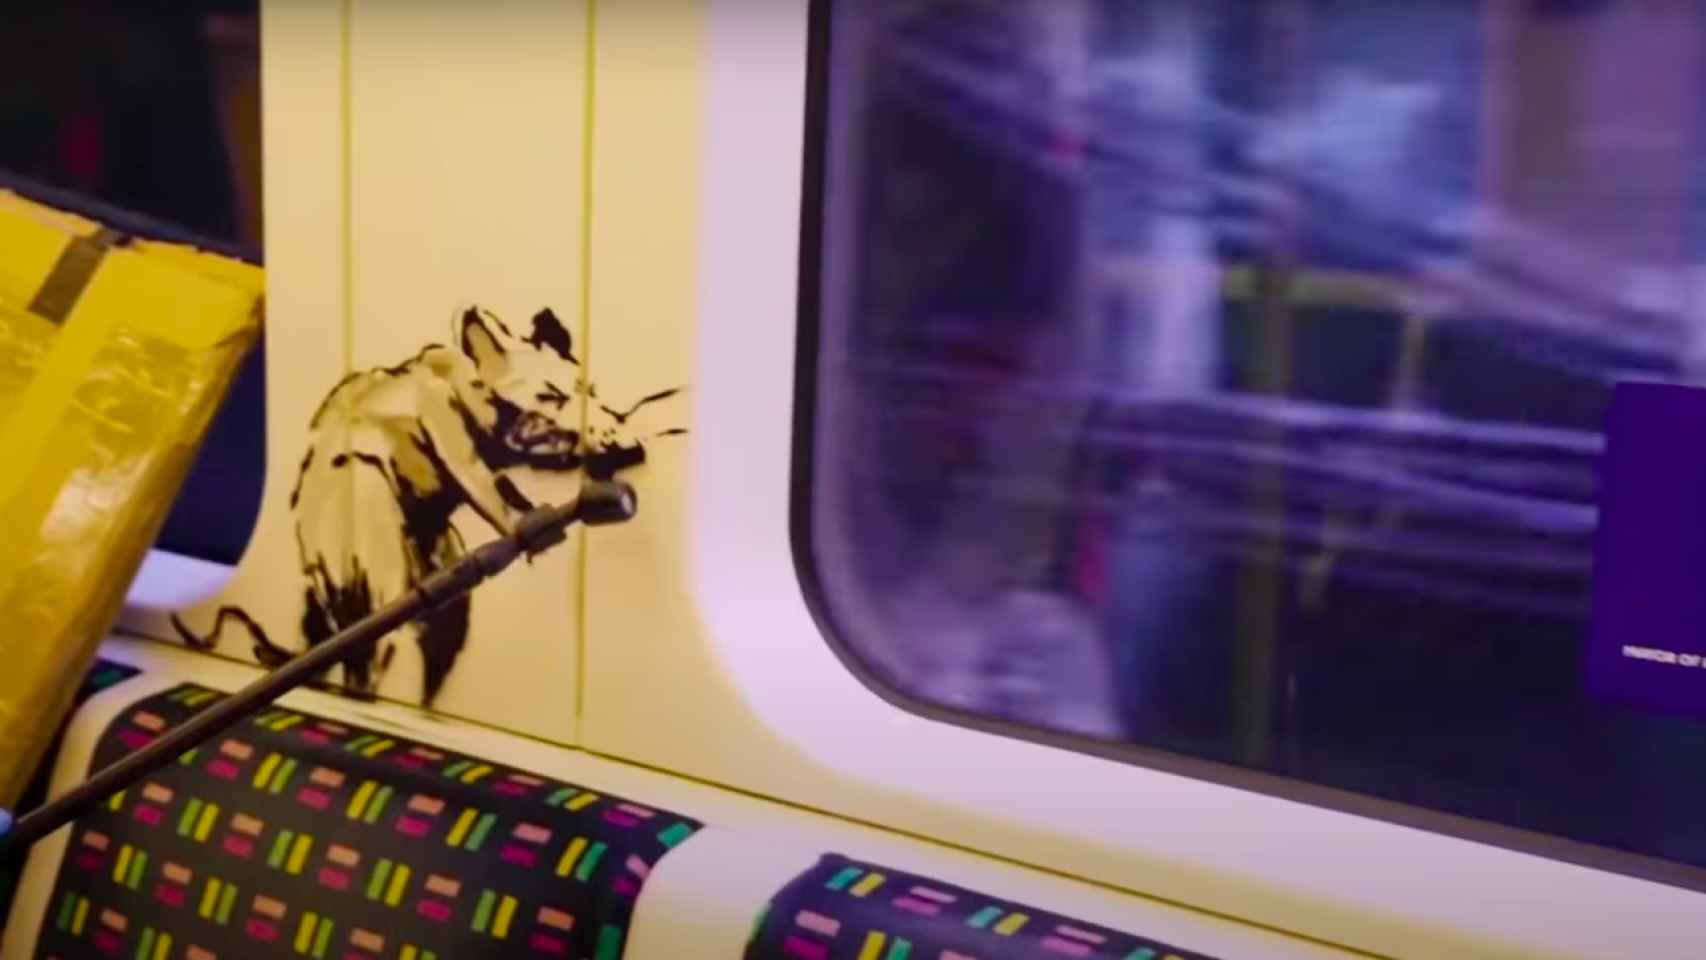 Captura de pantalla del vídeo del artista Banksy llenando de ratas el metro de Londres / BANKSY